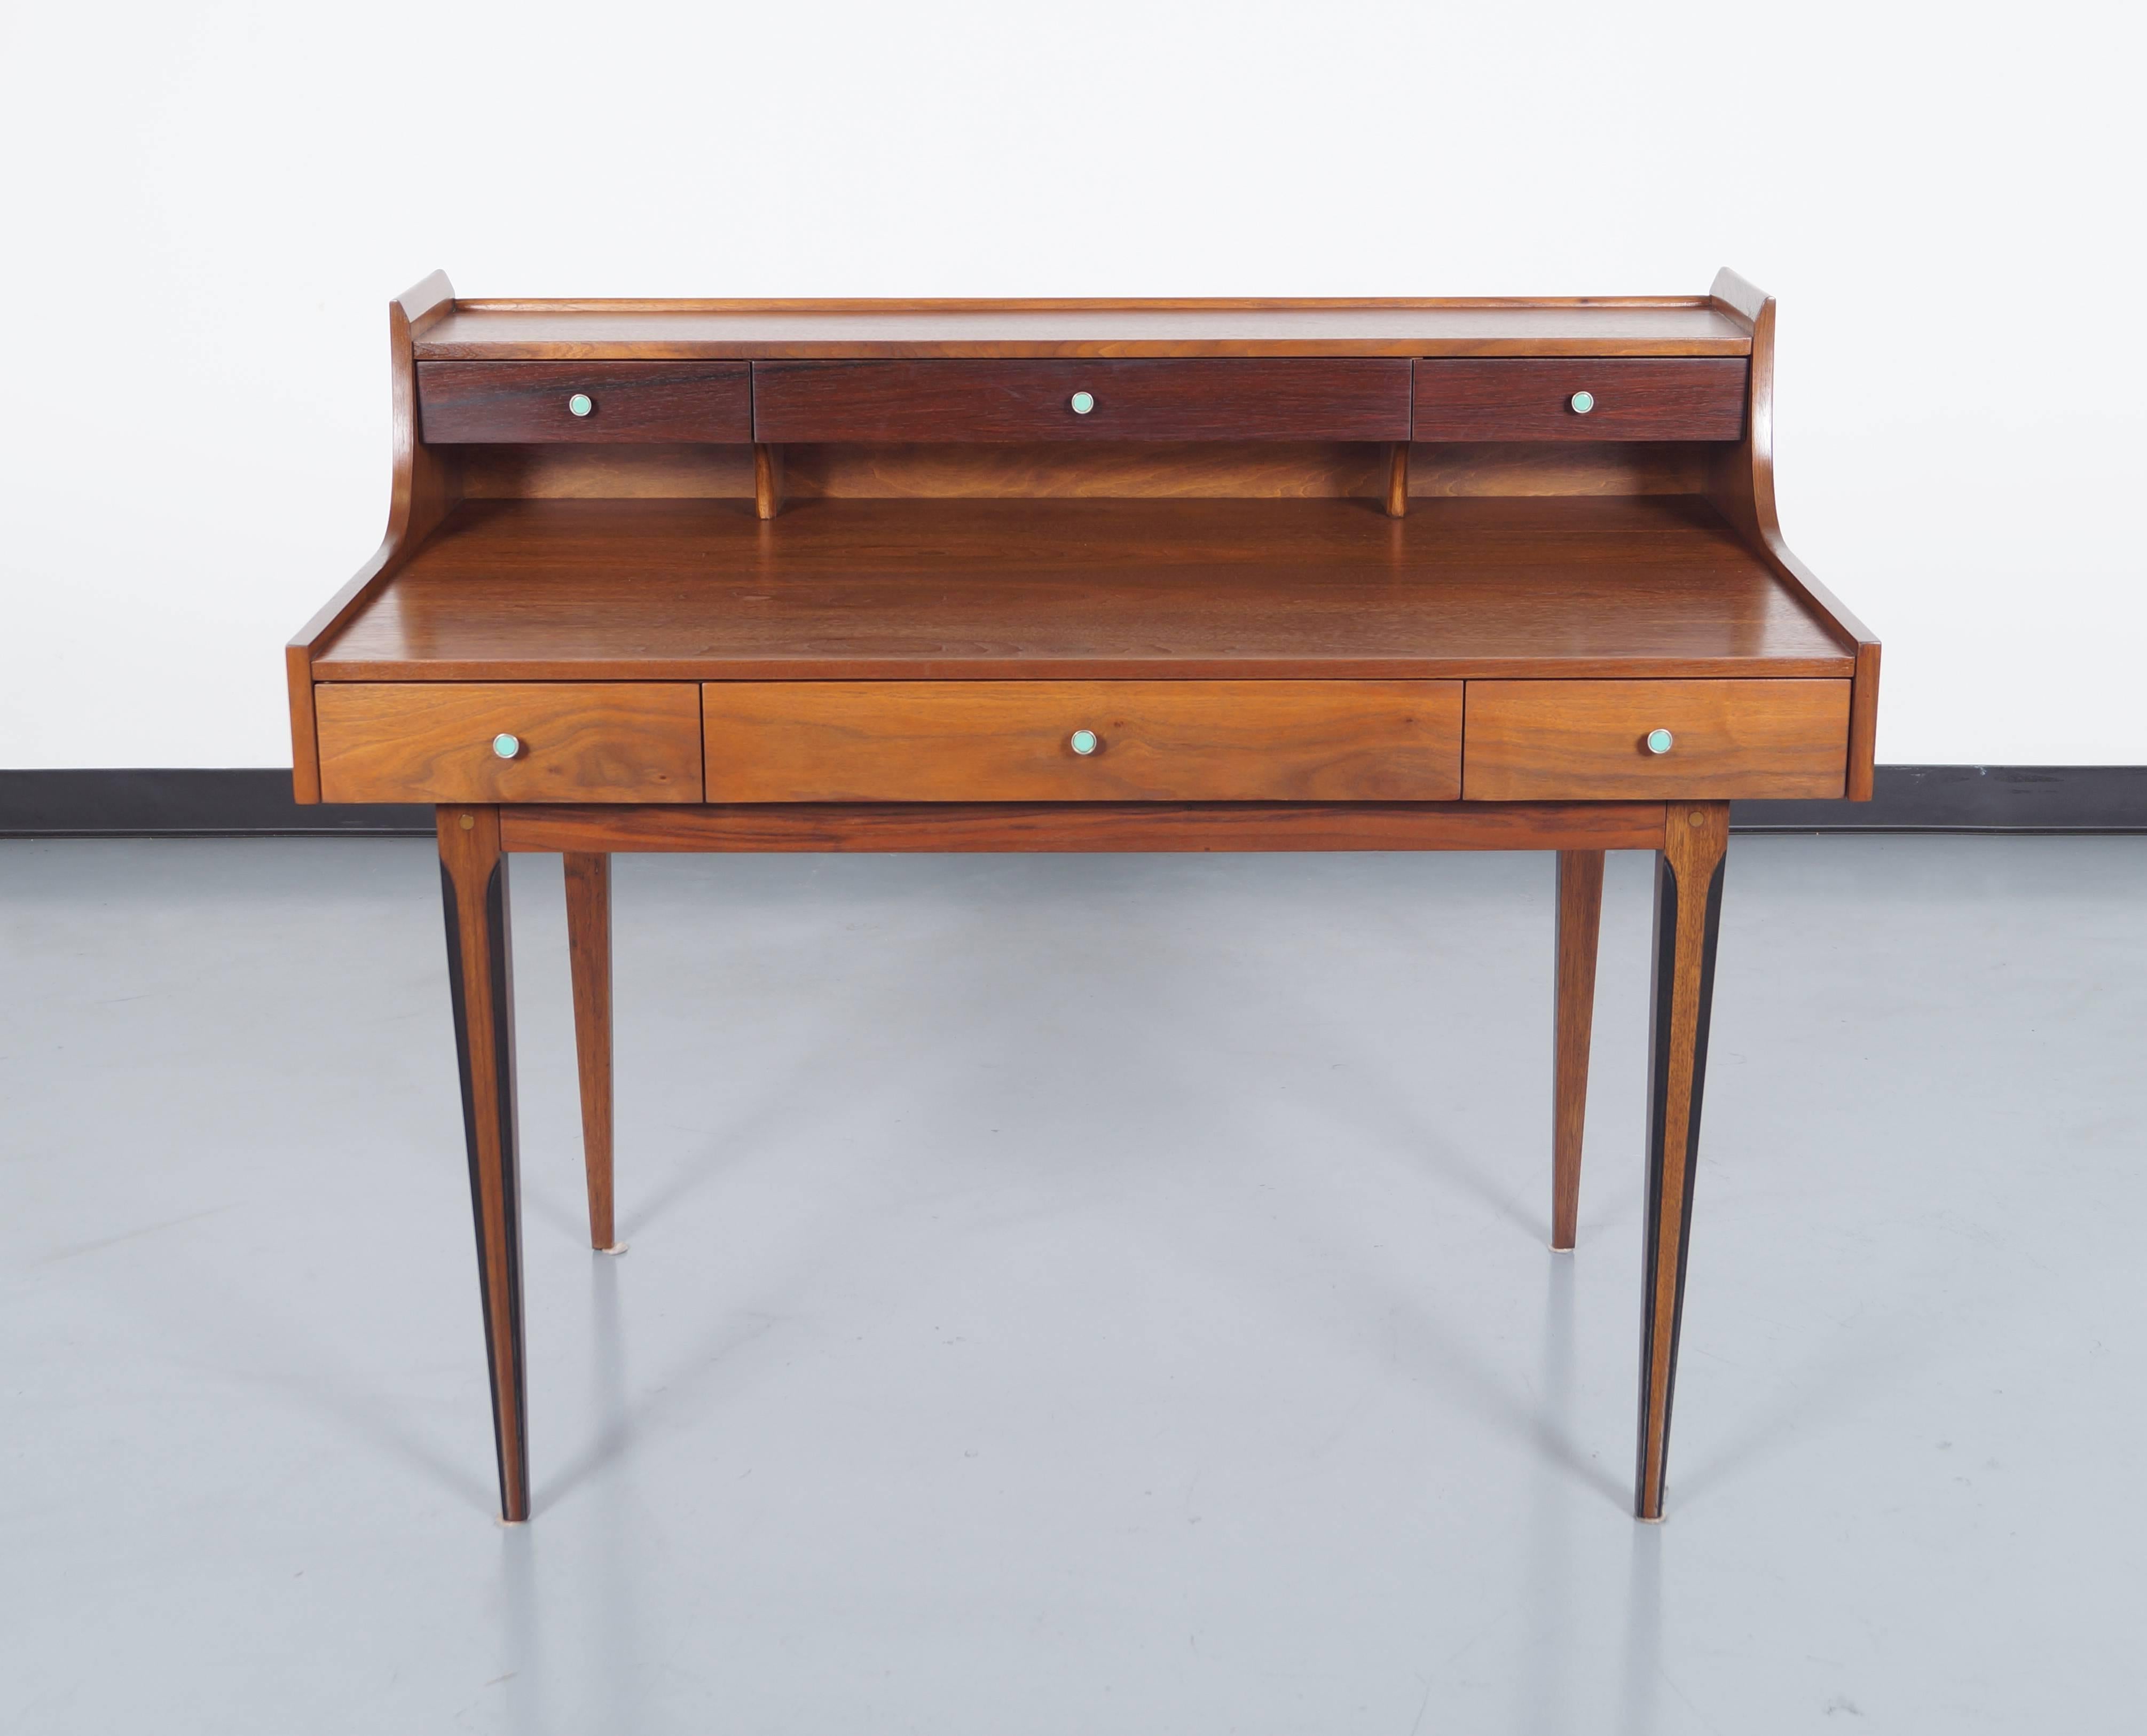 Vintage walnut and rosewood desk by Kroehler.